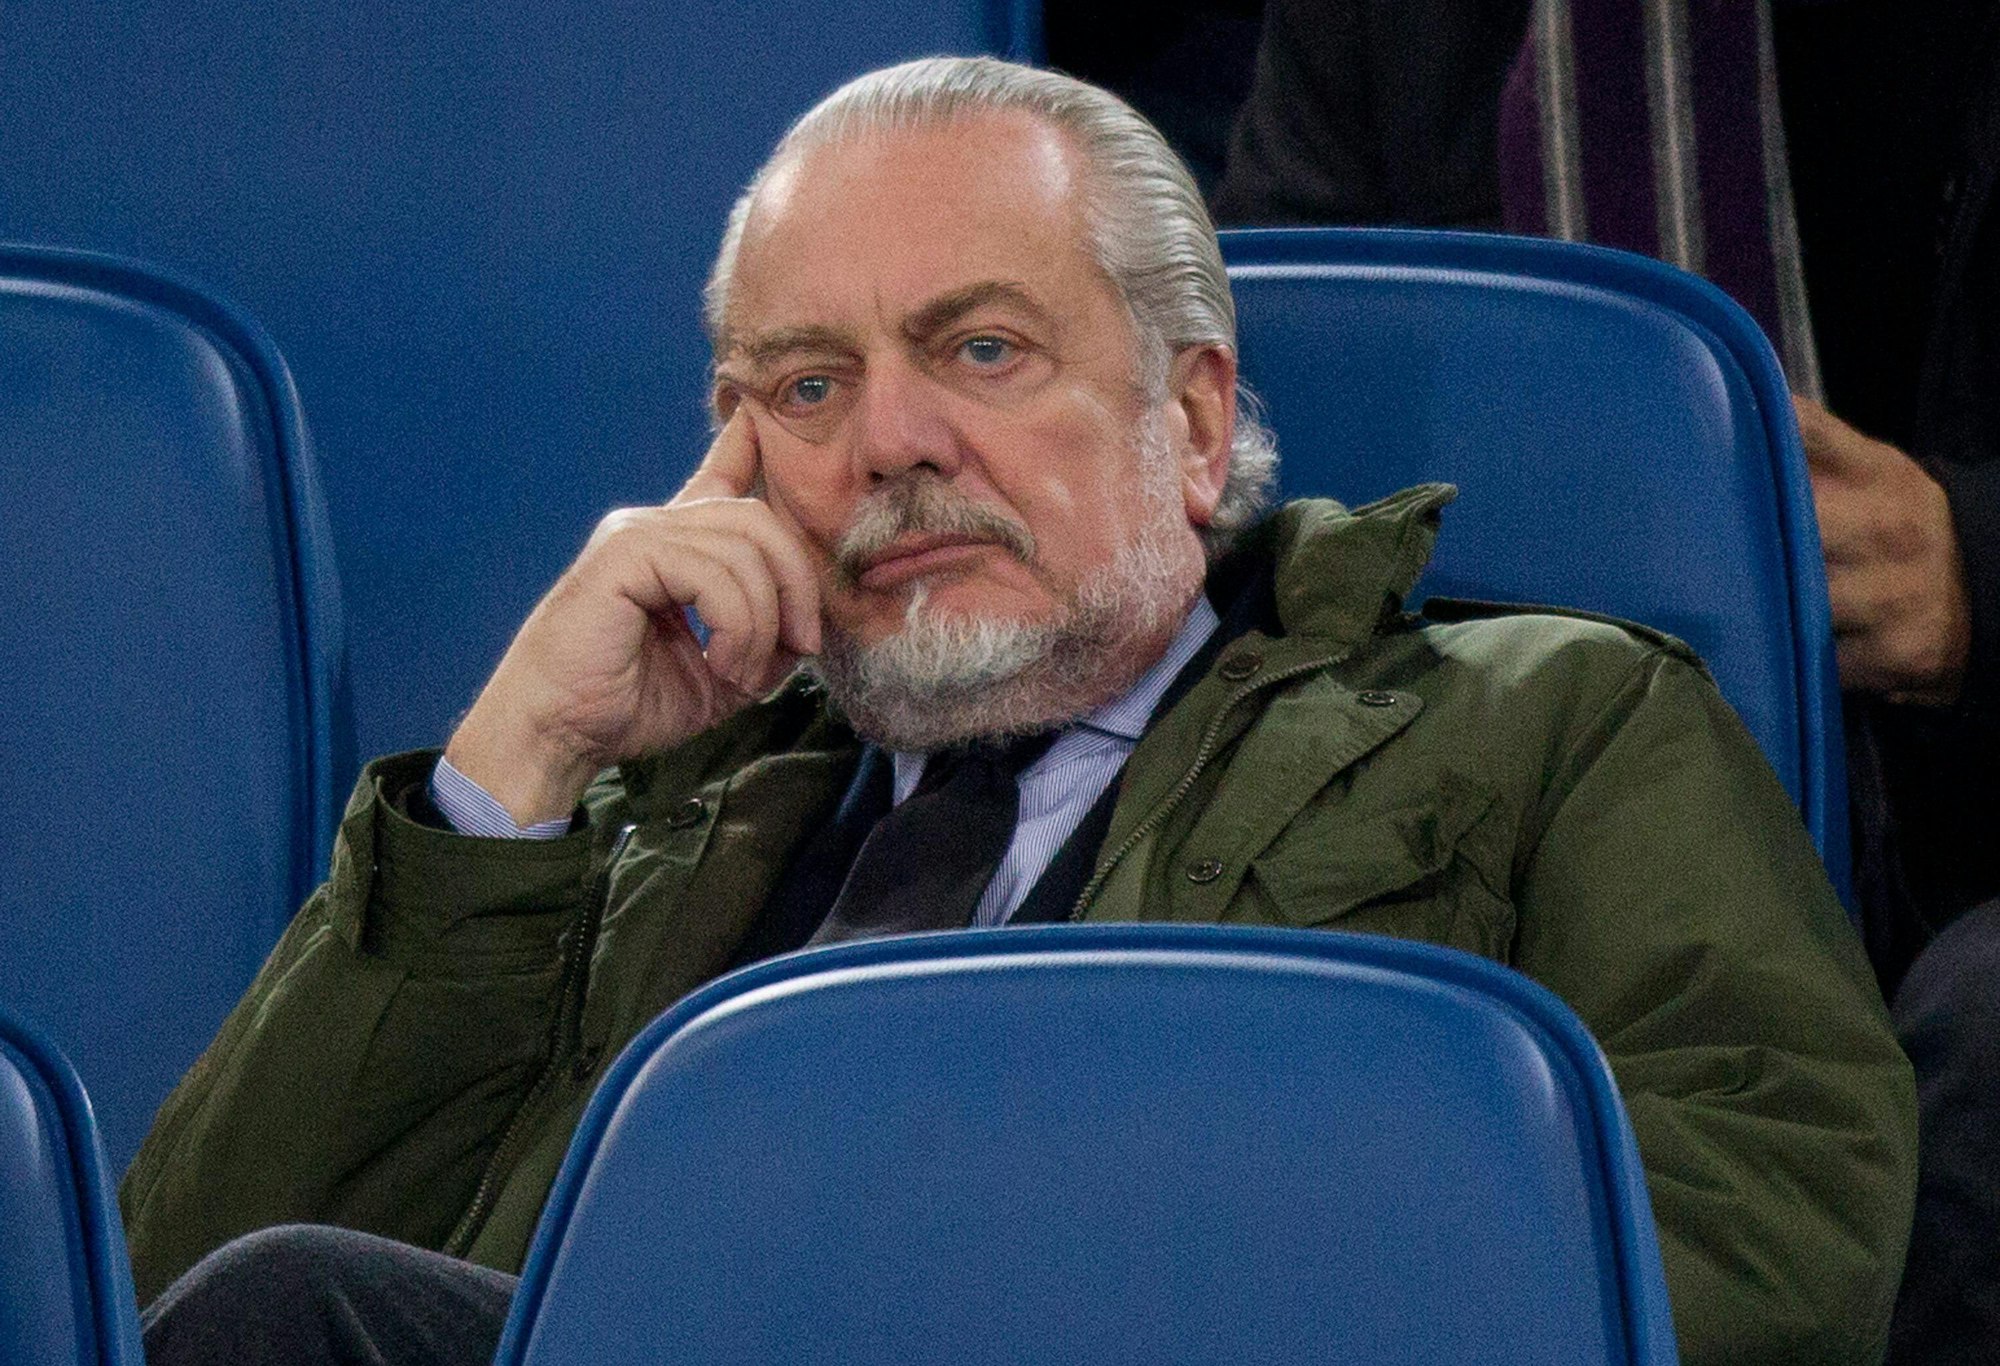 Napoli-Präsident Aurelio De Laurentiis verfolgt schlecht gelaunt ein Spiel seiner Mannschaft.